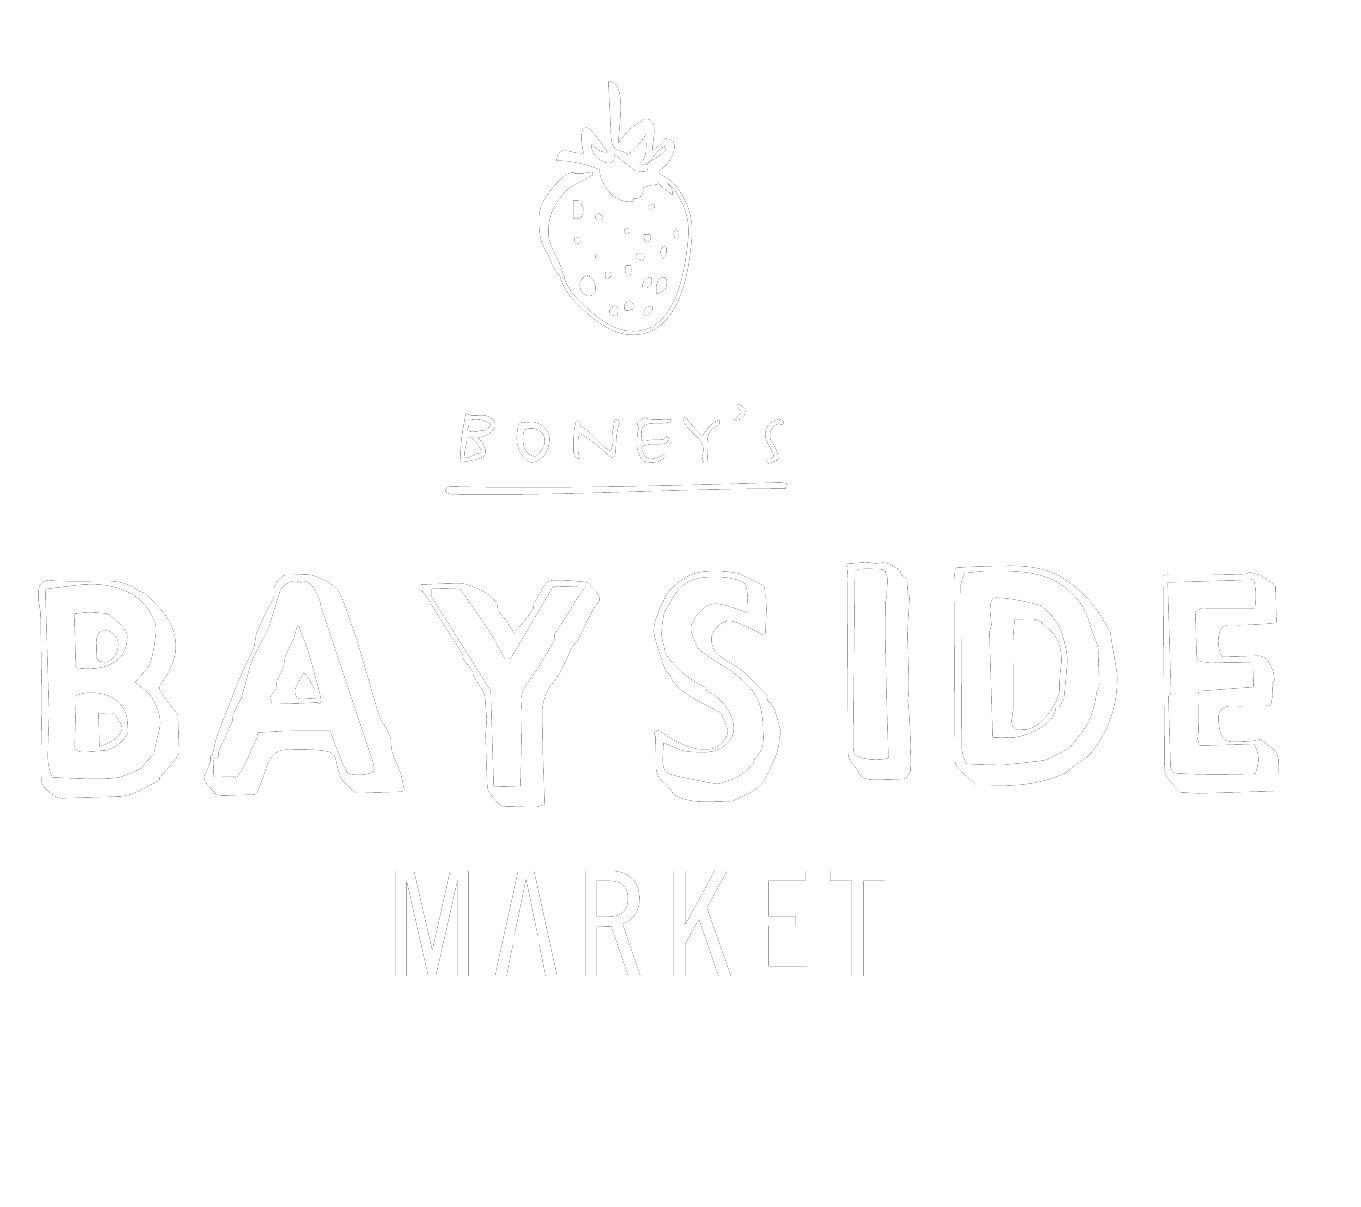 Boney's Bayside Market